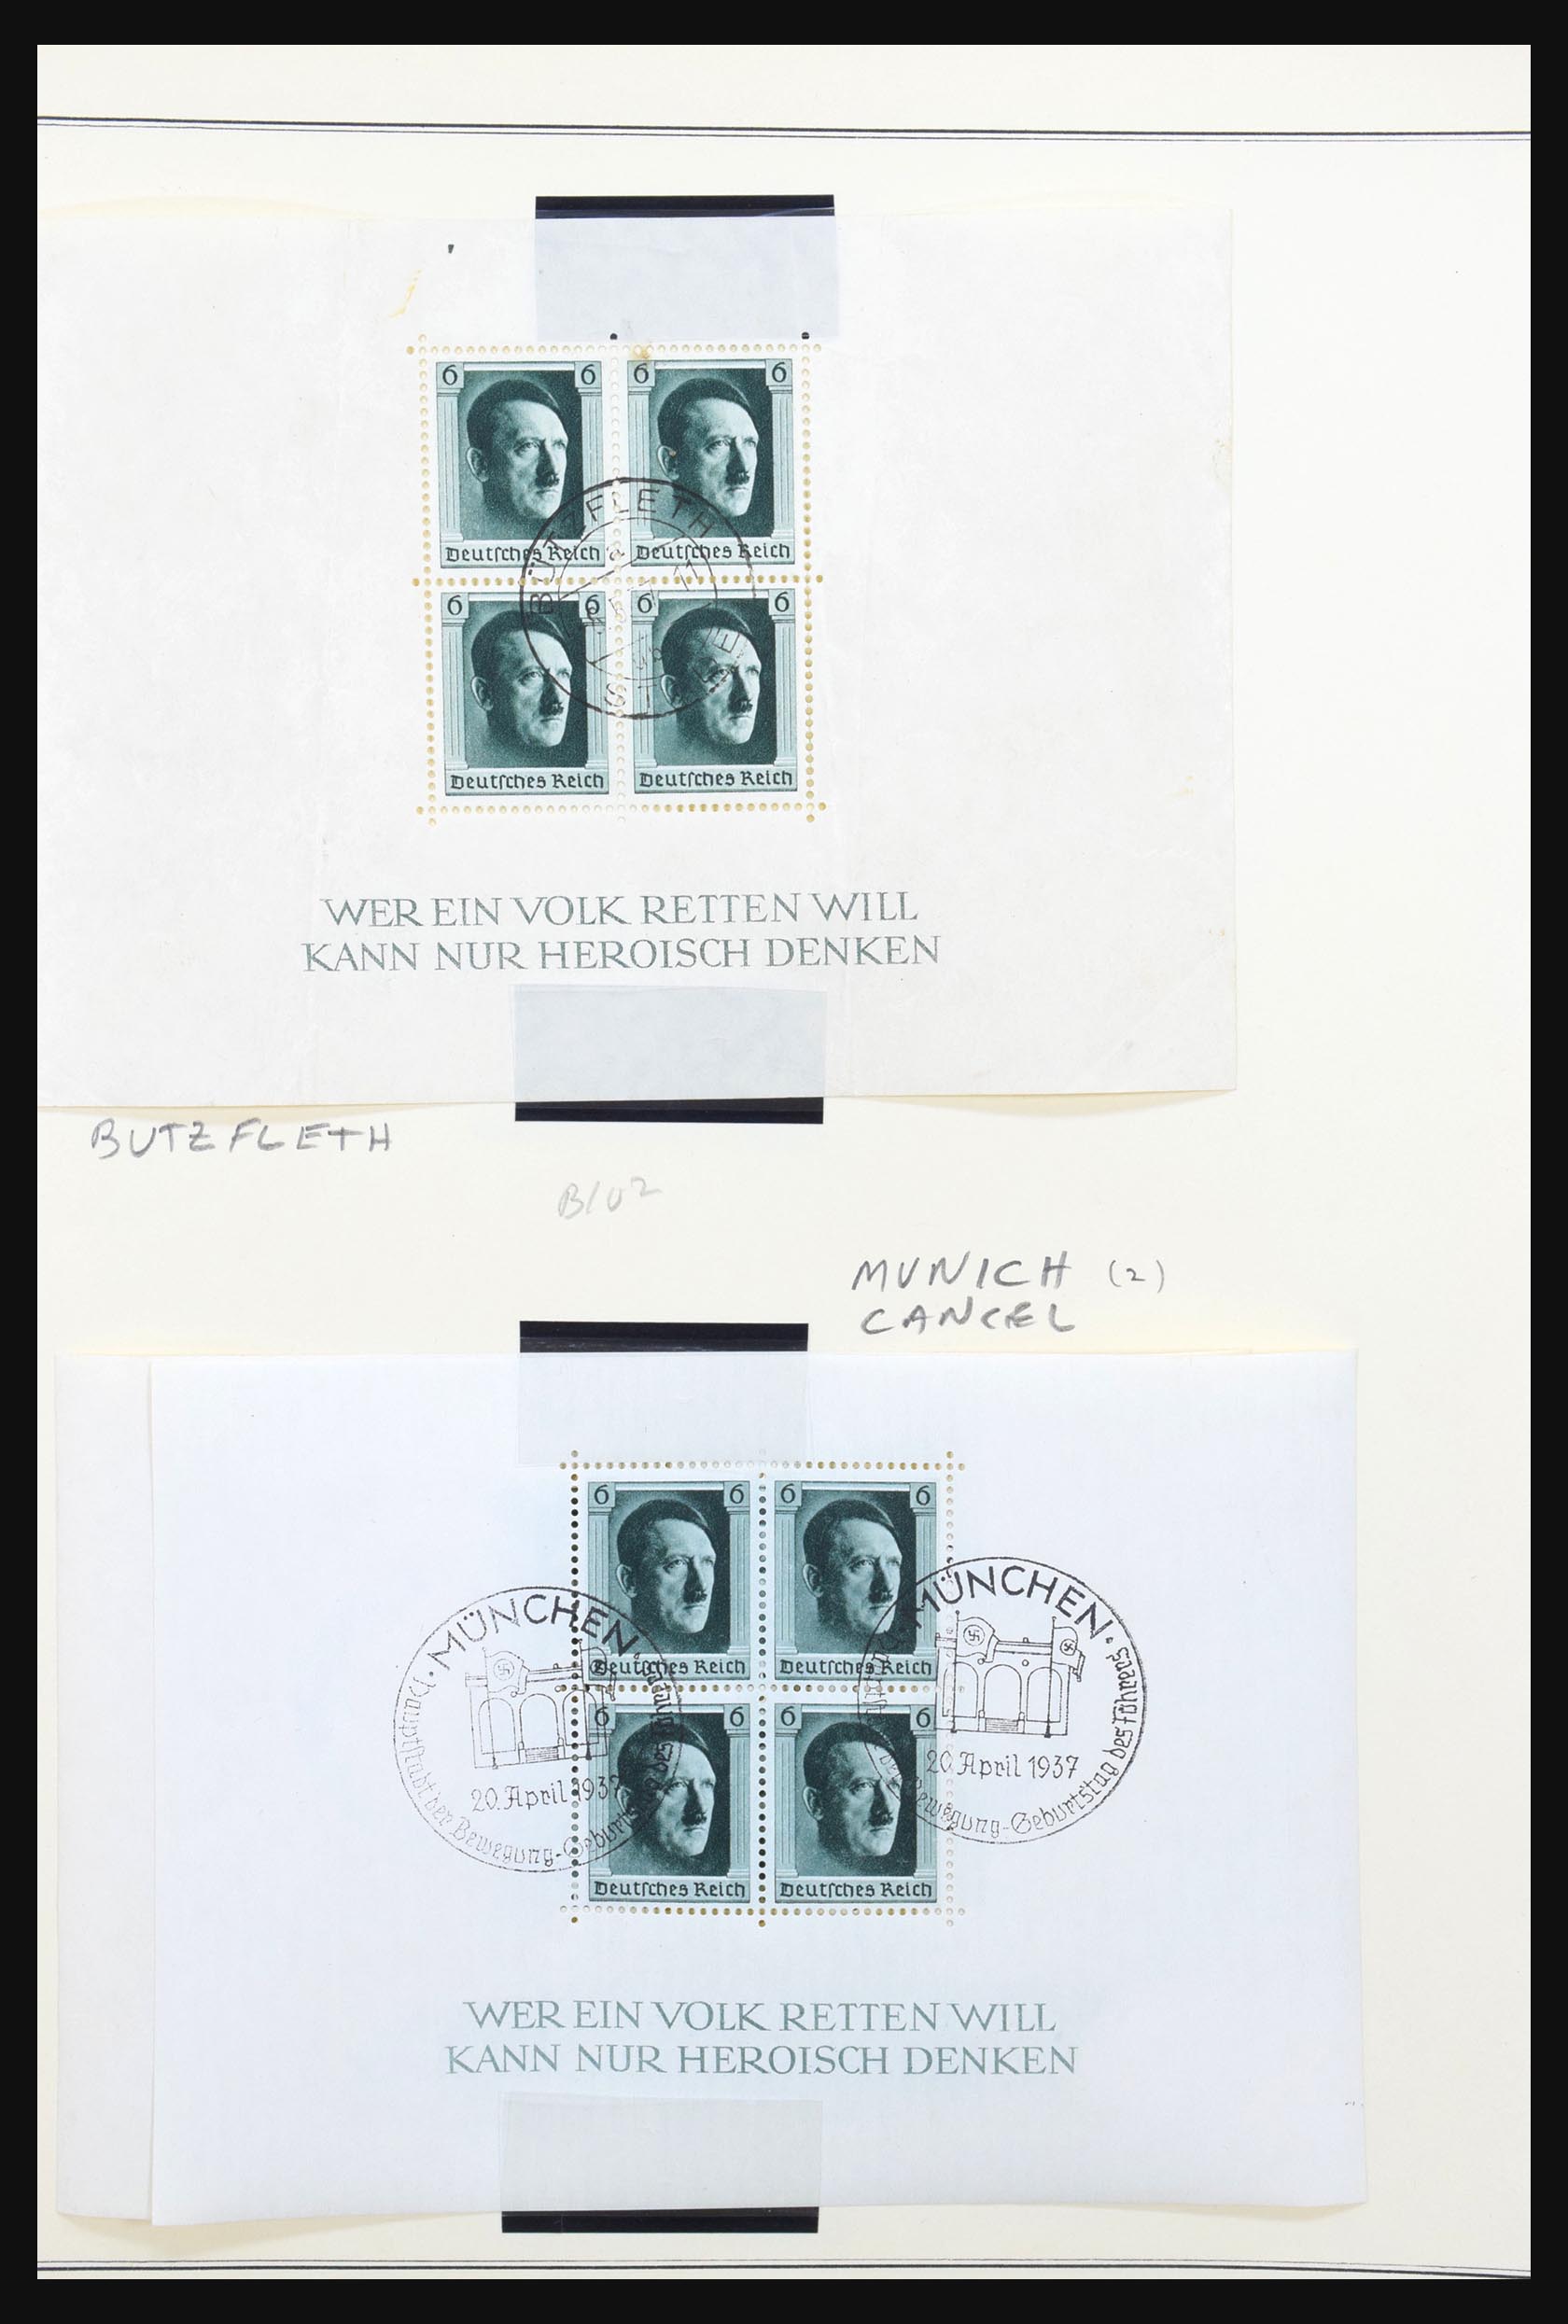 31300 276 - 31300 Duitsland superverzameling 1849-1990.